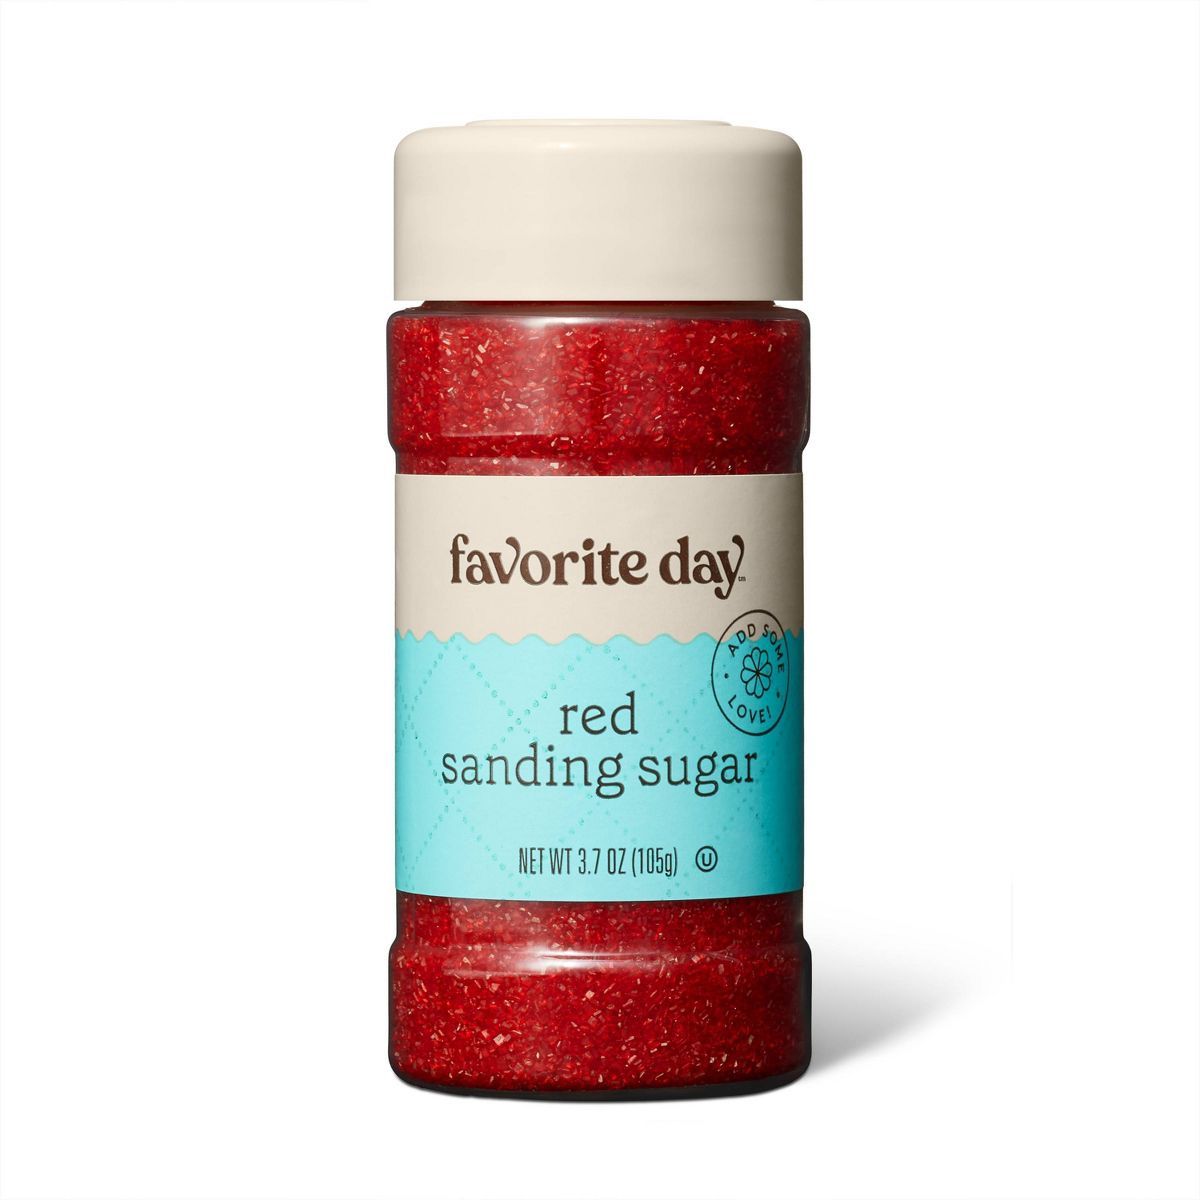 Red Sanding Sugar - 3.7oz - Favorite Day™ | Target